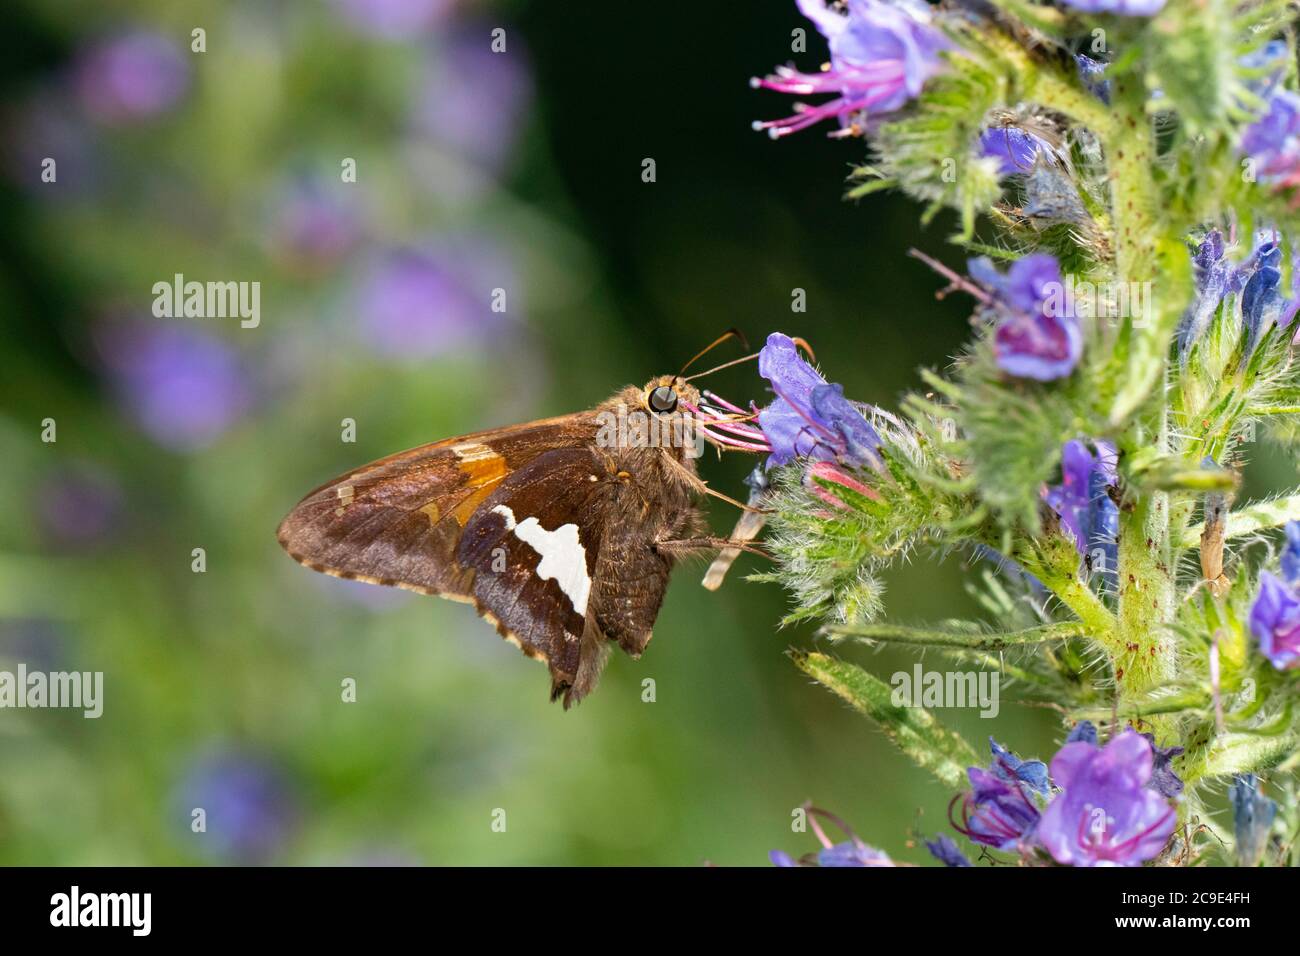 Silberfleckiger Schmetterling, der sich auf Wildblumen ernährt - Epargyreus clarus Stockfoto